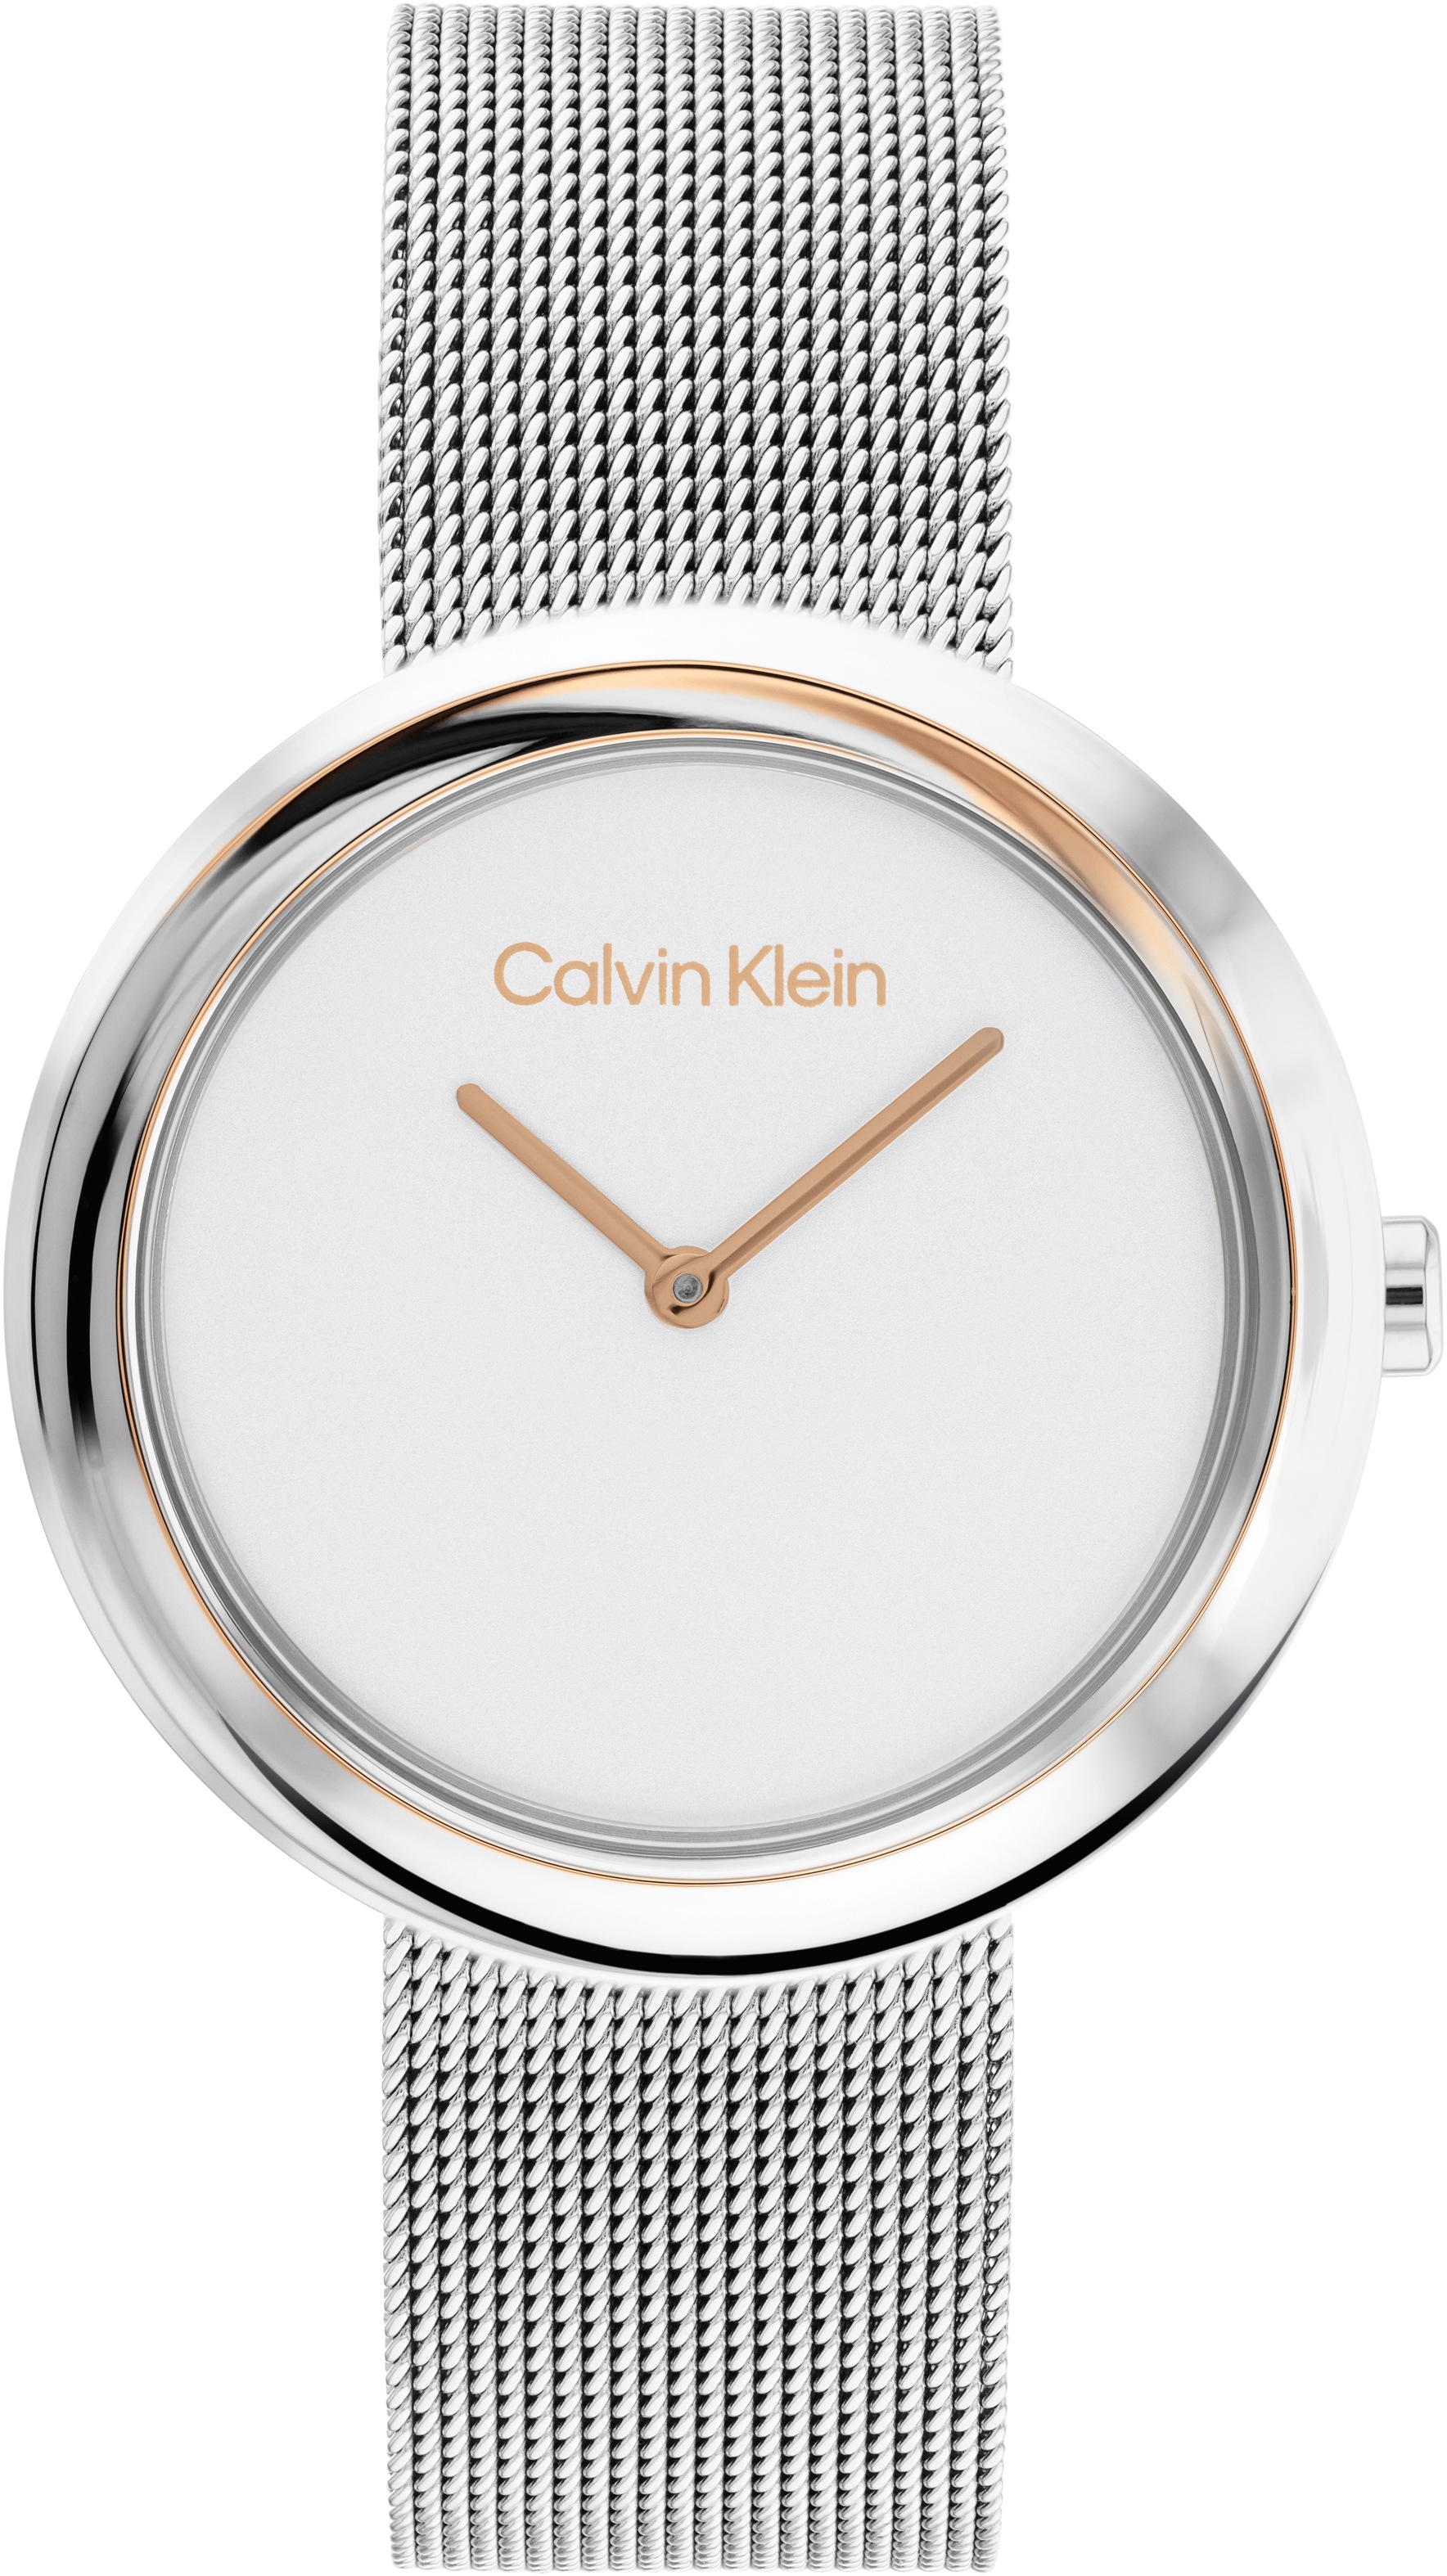 Calvin Klein Quarzuhr »Twisted Bezel, 25200011«, Armbanduhr, Damenuhr, Mineralglas, IP-Beschichtung